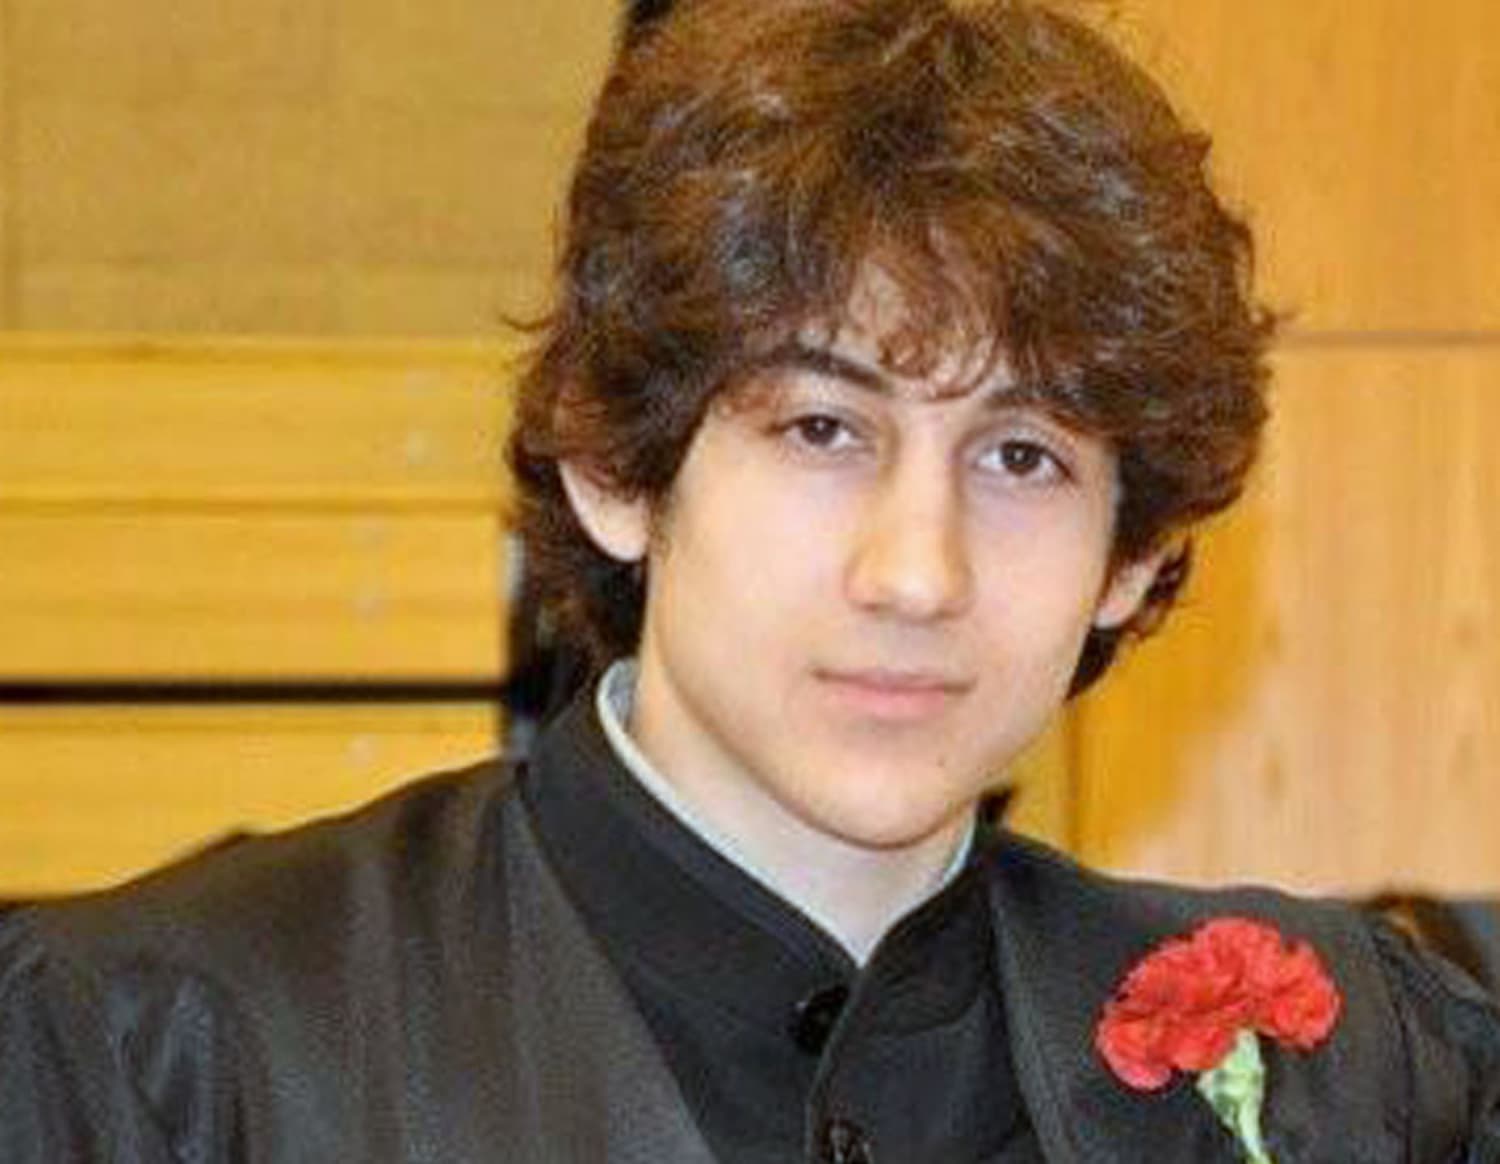 Boston Bombing Suspect Dzhokhar Tsarnaev Arrives At Federal Court2500 x 1940